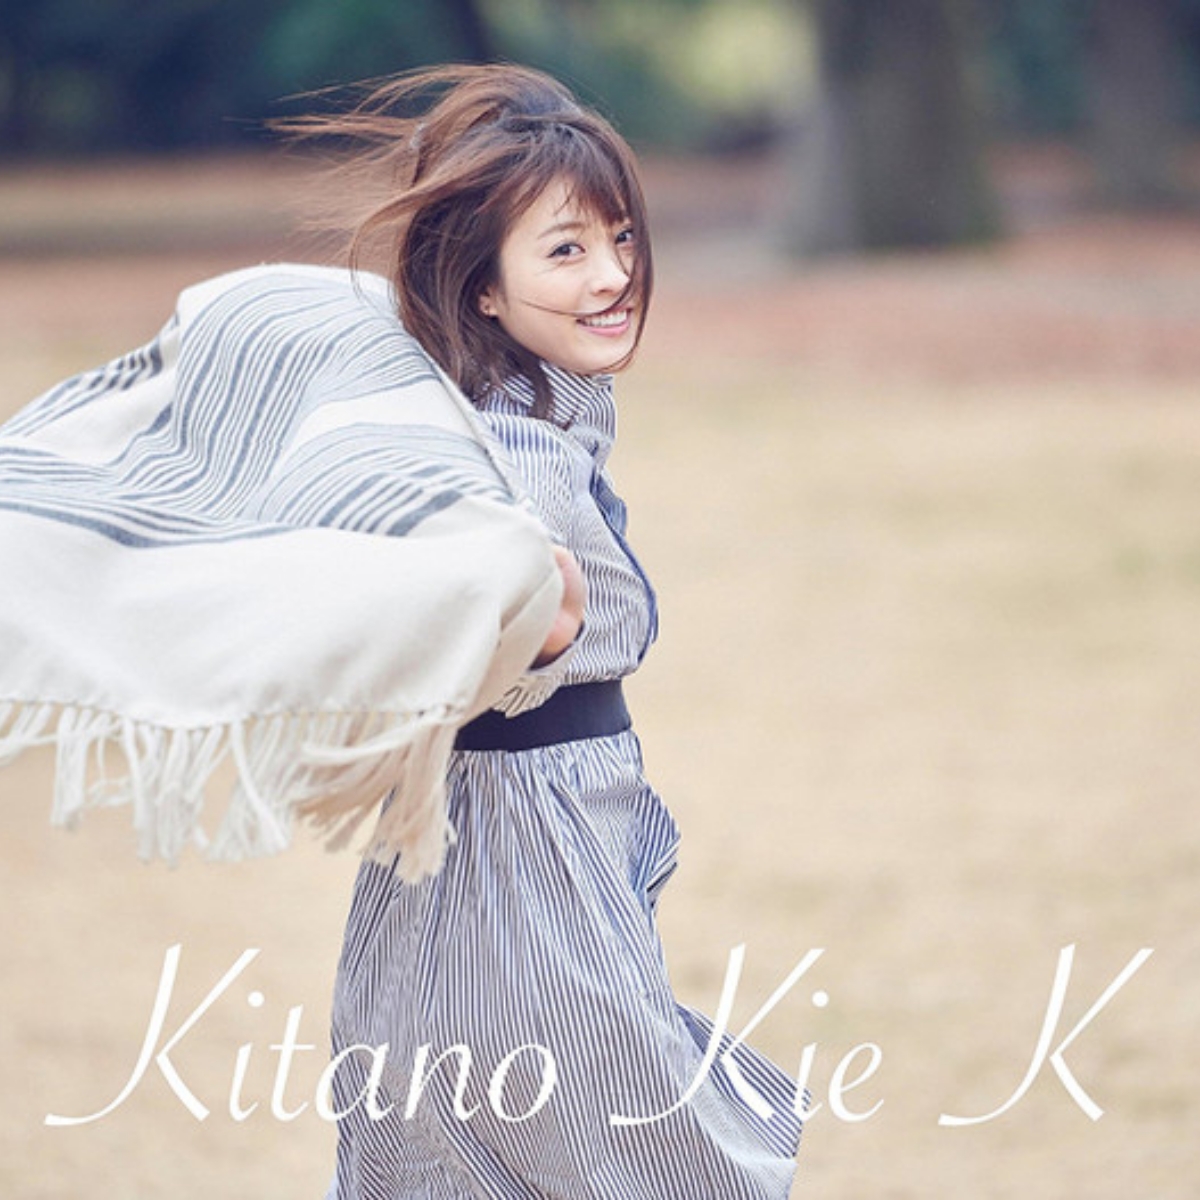 Kie Kitano - Never Cry